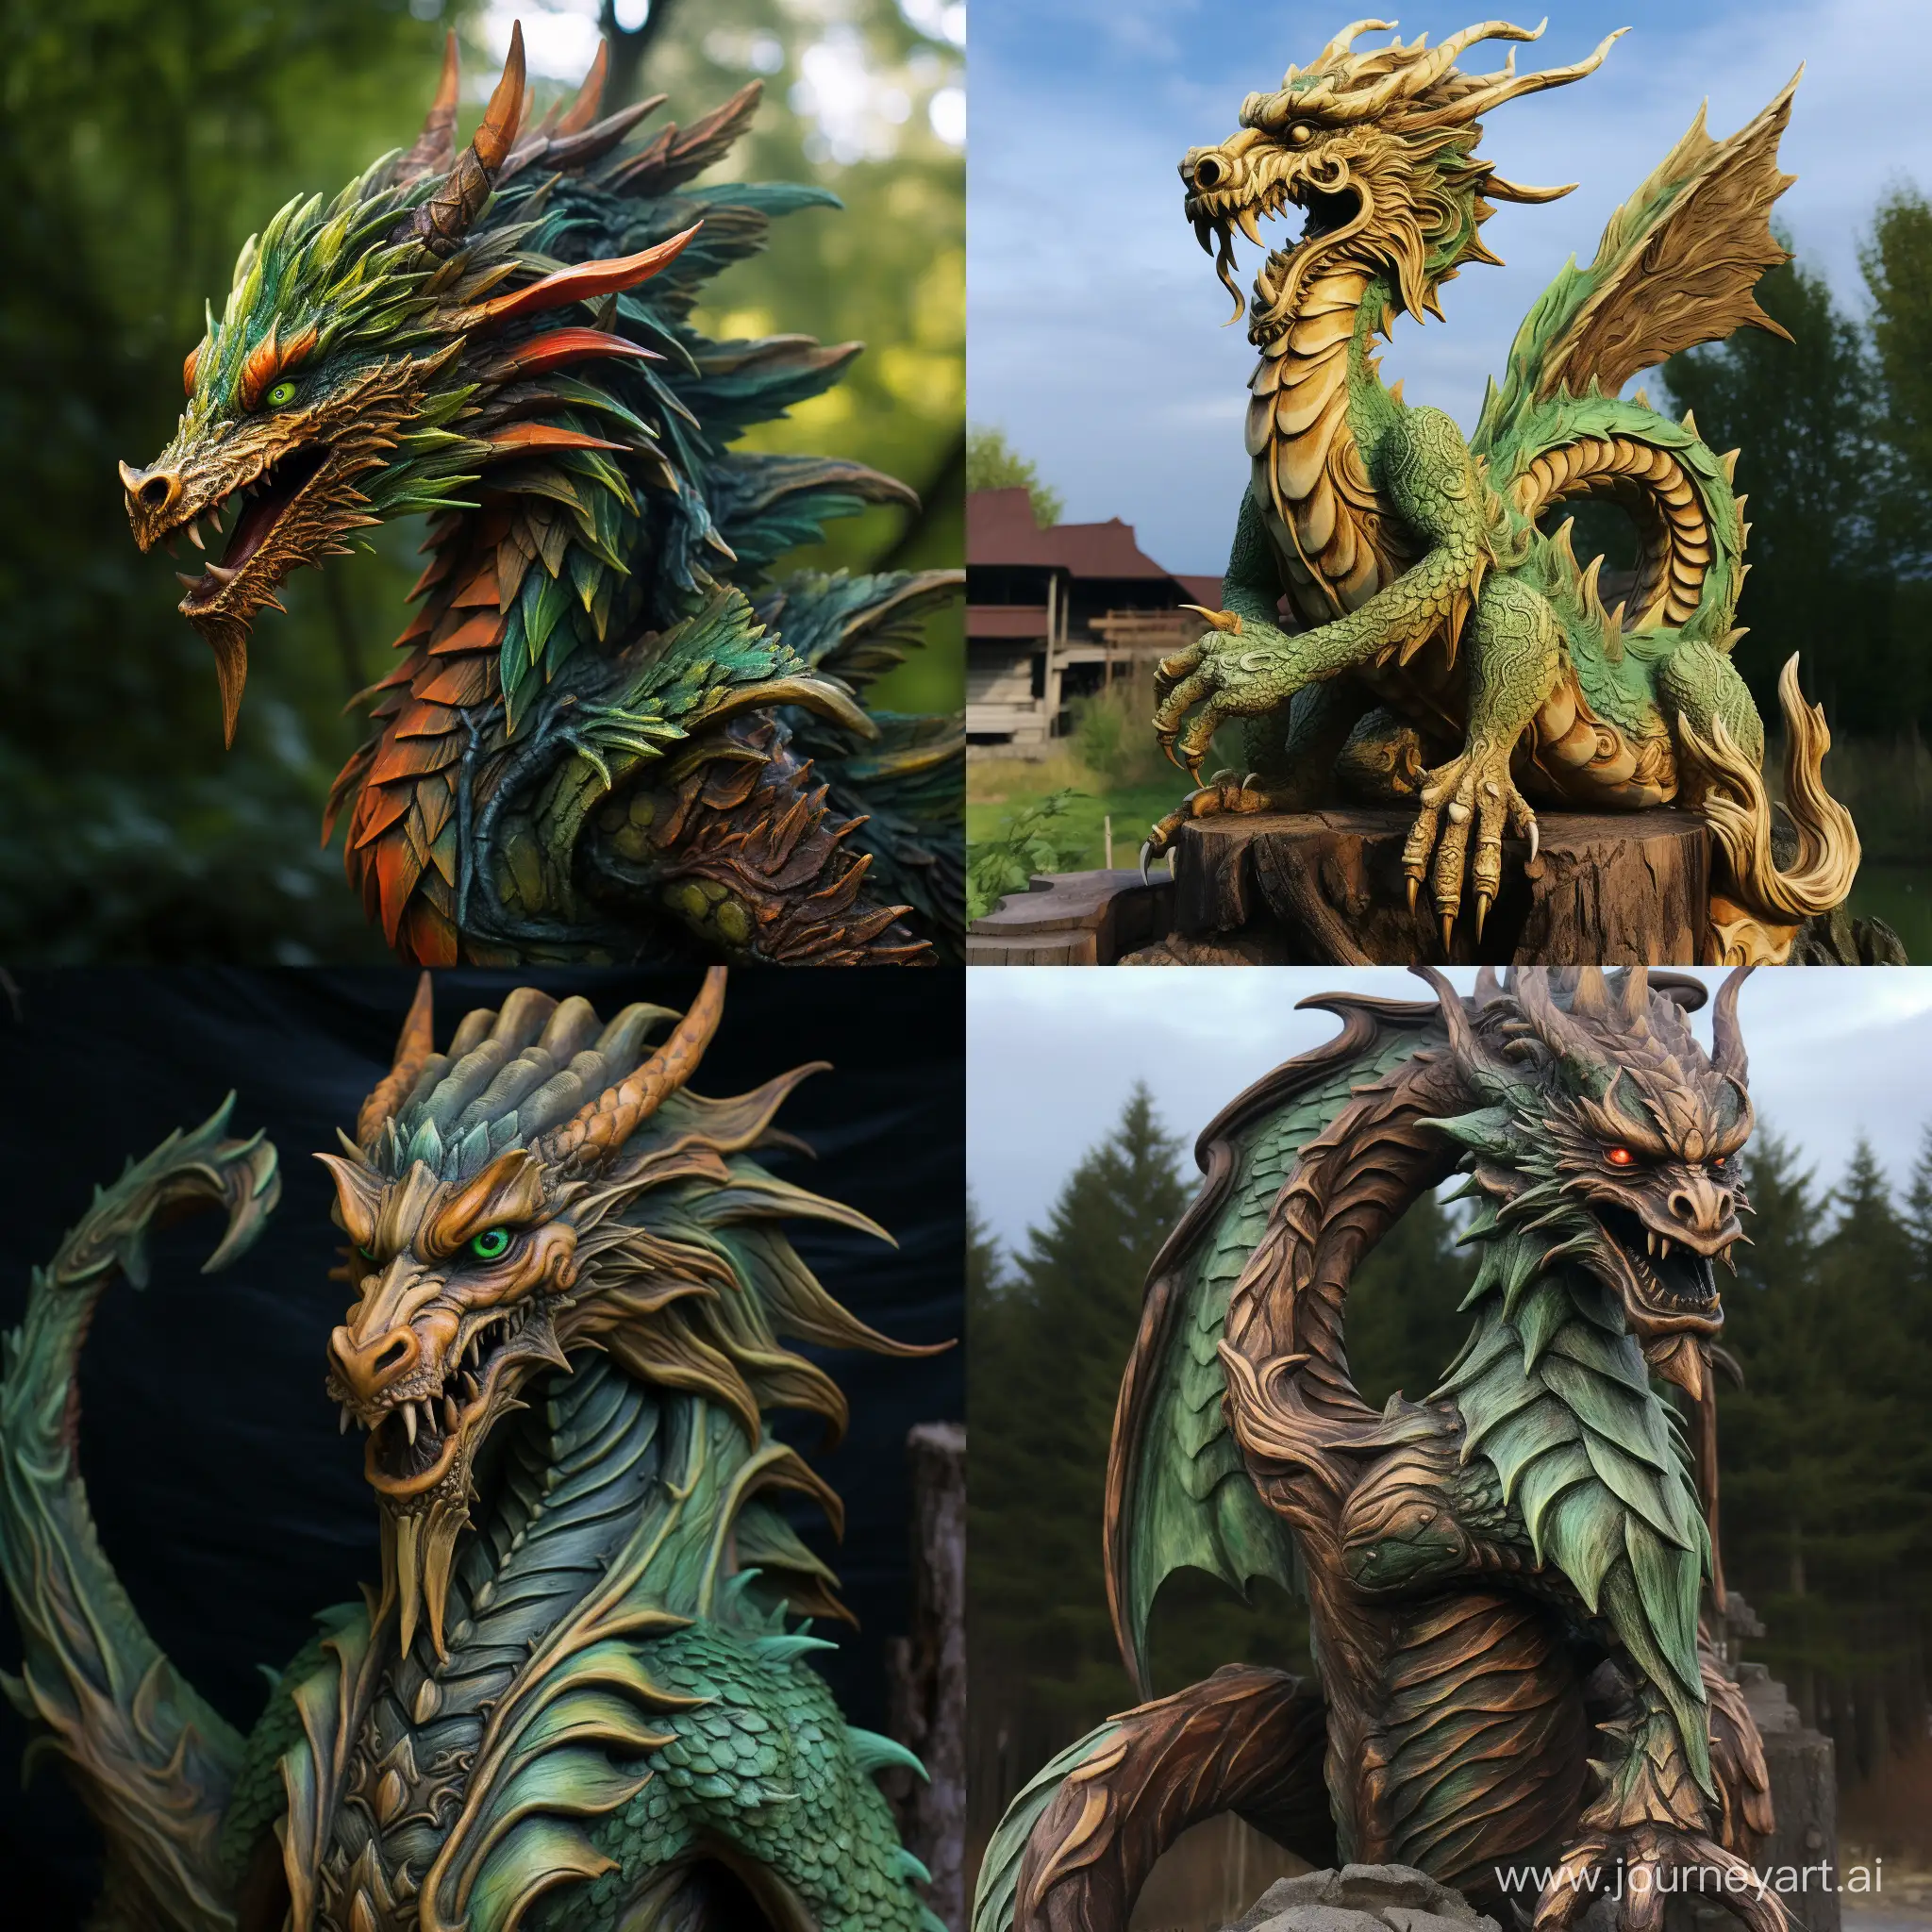 Majestic-Fiery-Wooden-Dragon-Sculpture